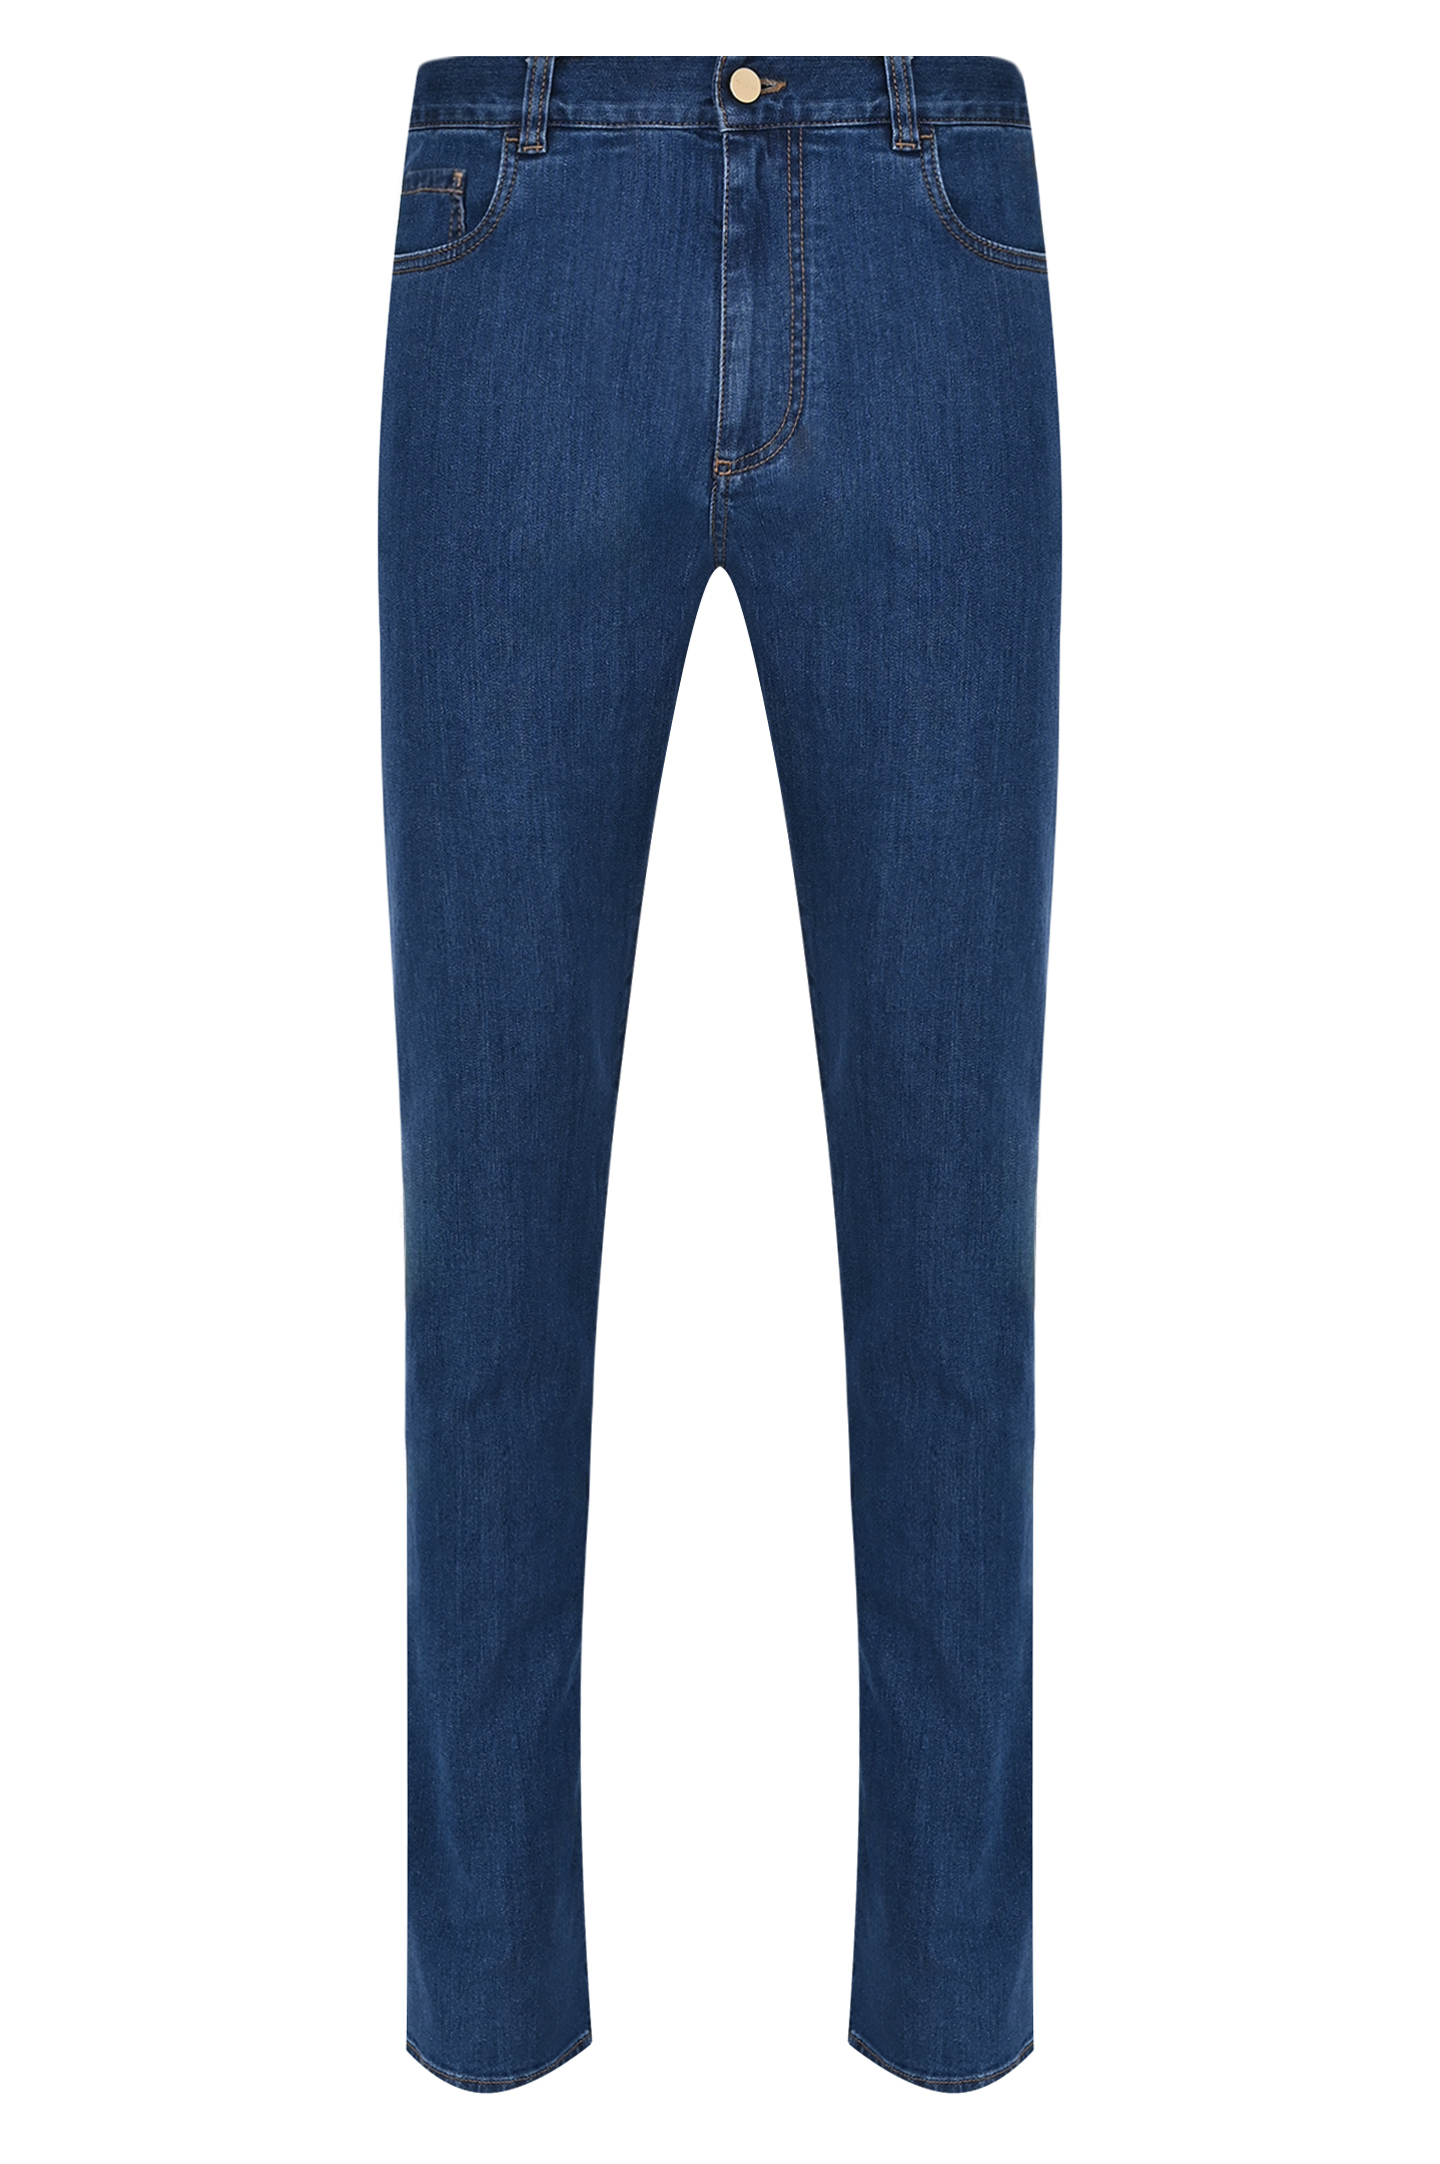 Прямые базовые джинсы CANALI PD00018 91700I, цвет: Синий, Мужской